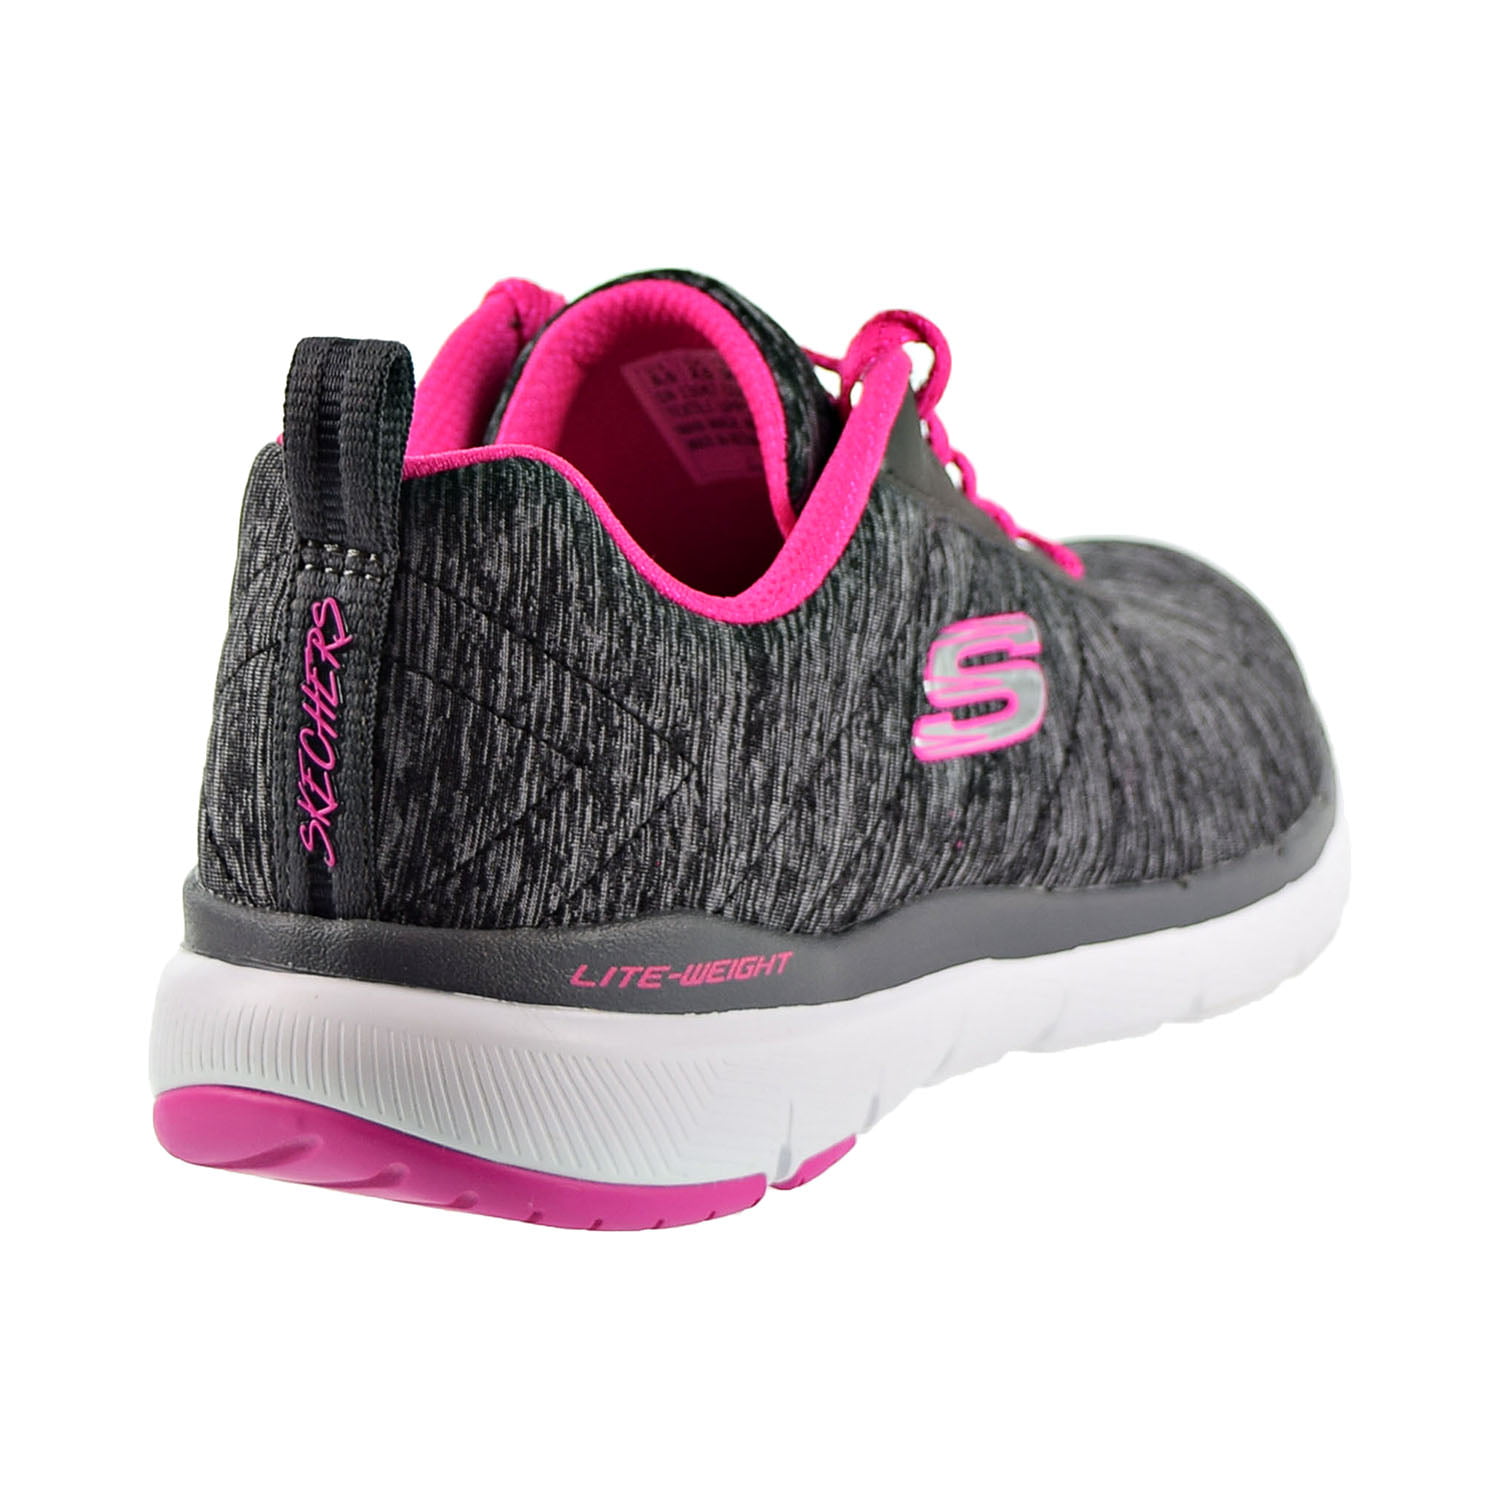 Skechers Appeal 3.0 Insiders Sneakers (Women) -